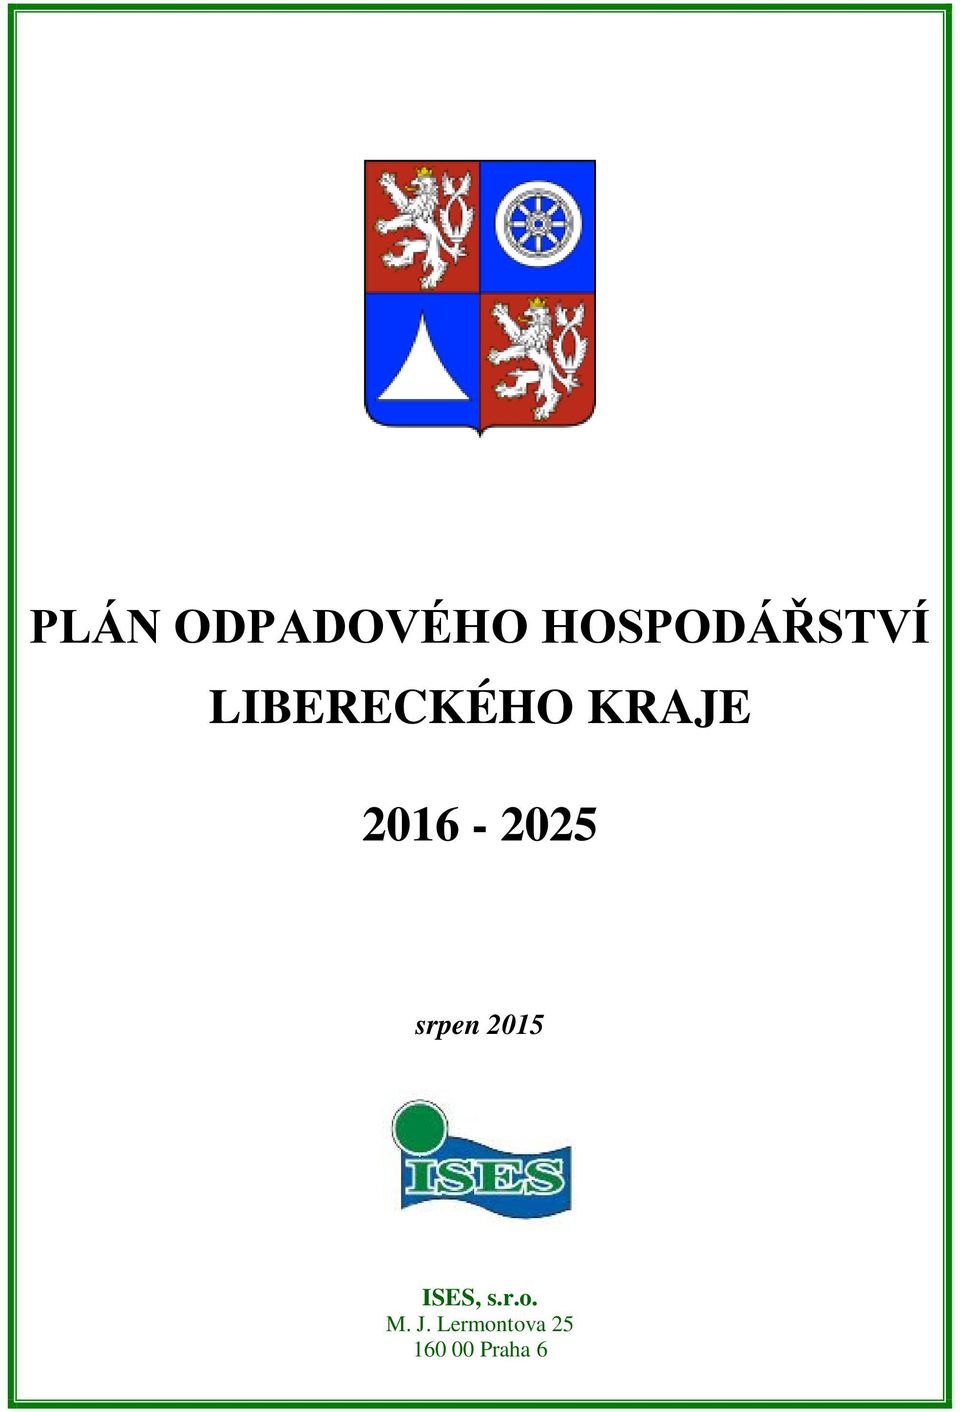 KRAJE 2016-2025 srpen